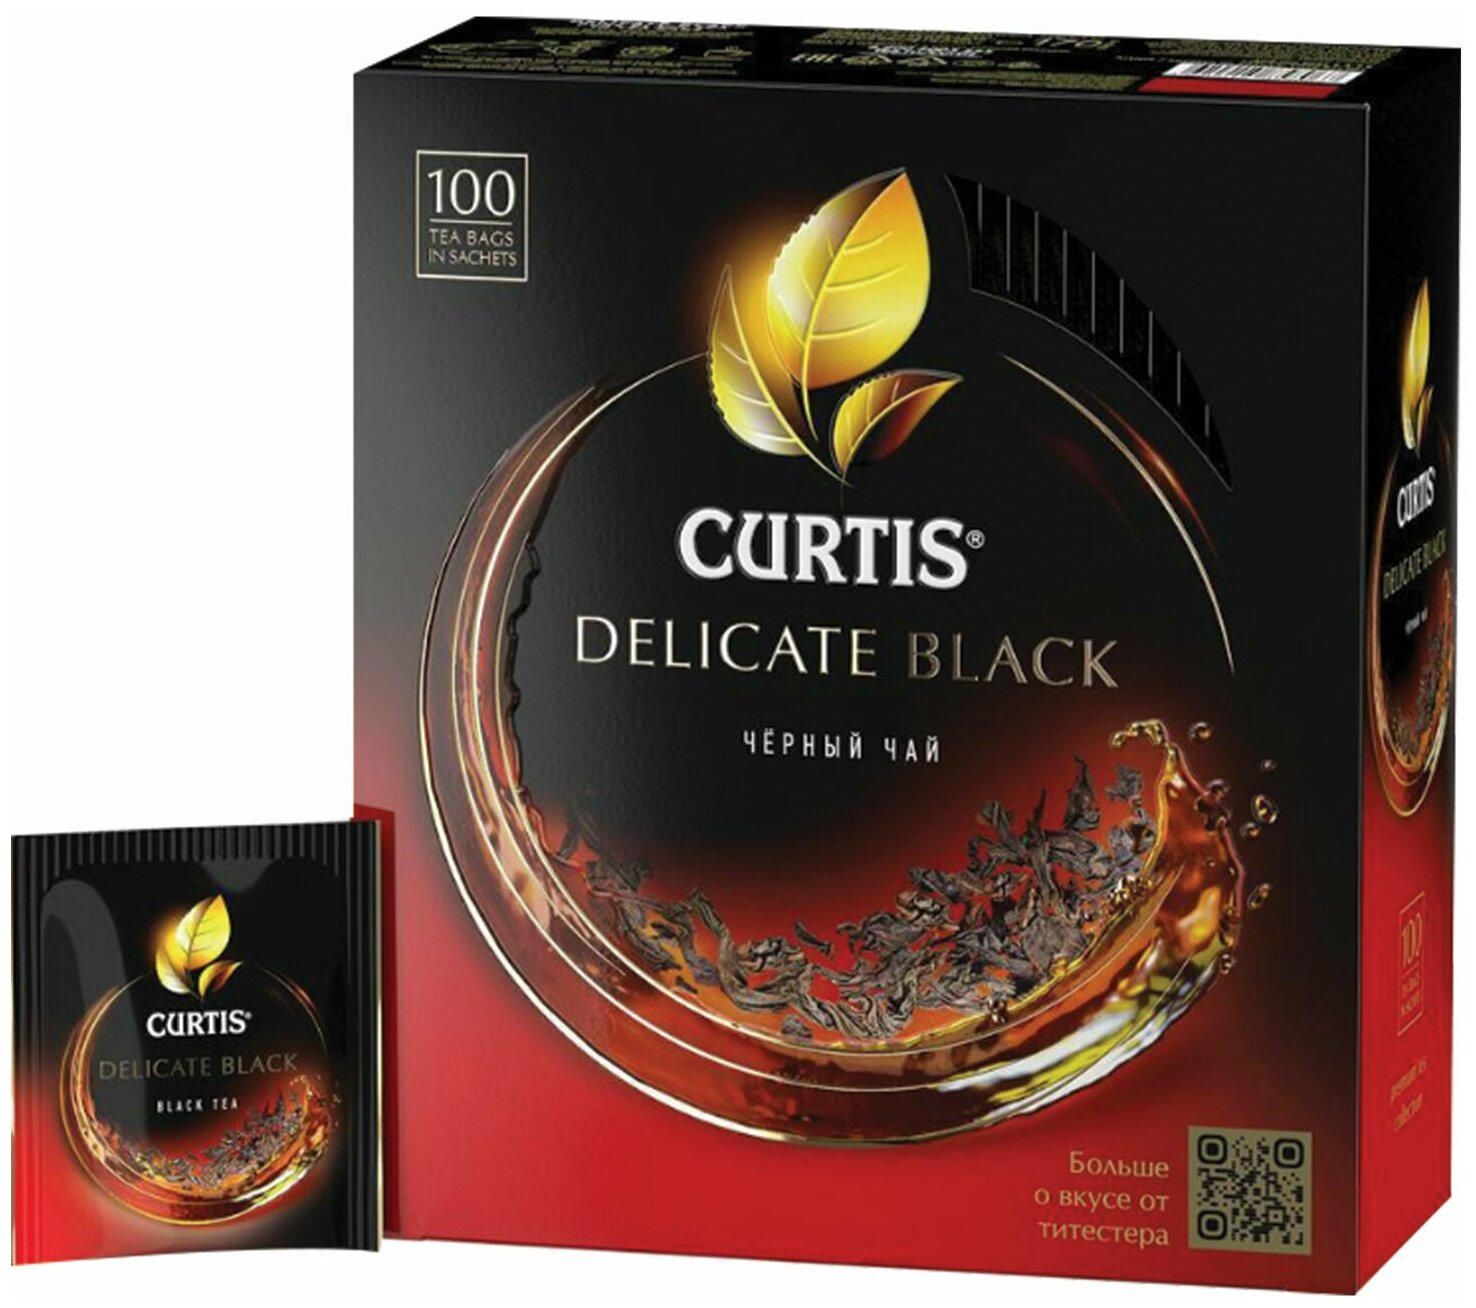 Чай CURTIS "Delicate Black" черный, 100 пакетиков в конвертах по 1,7 г, 101014 В комплекте: 1шт.